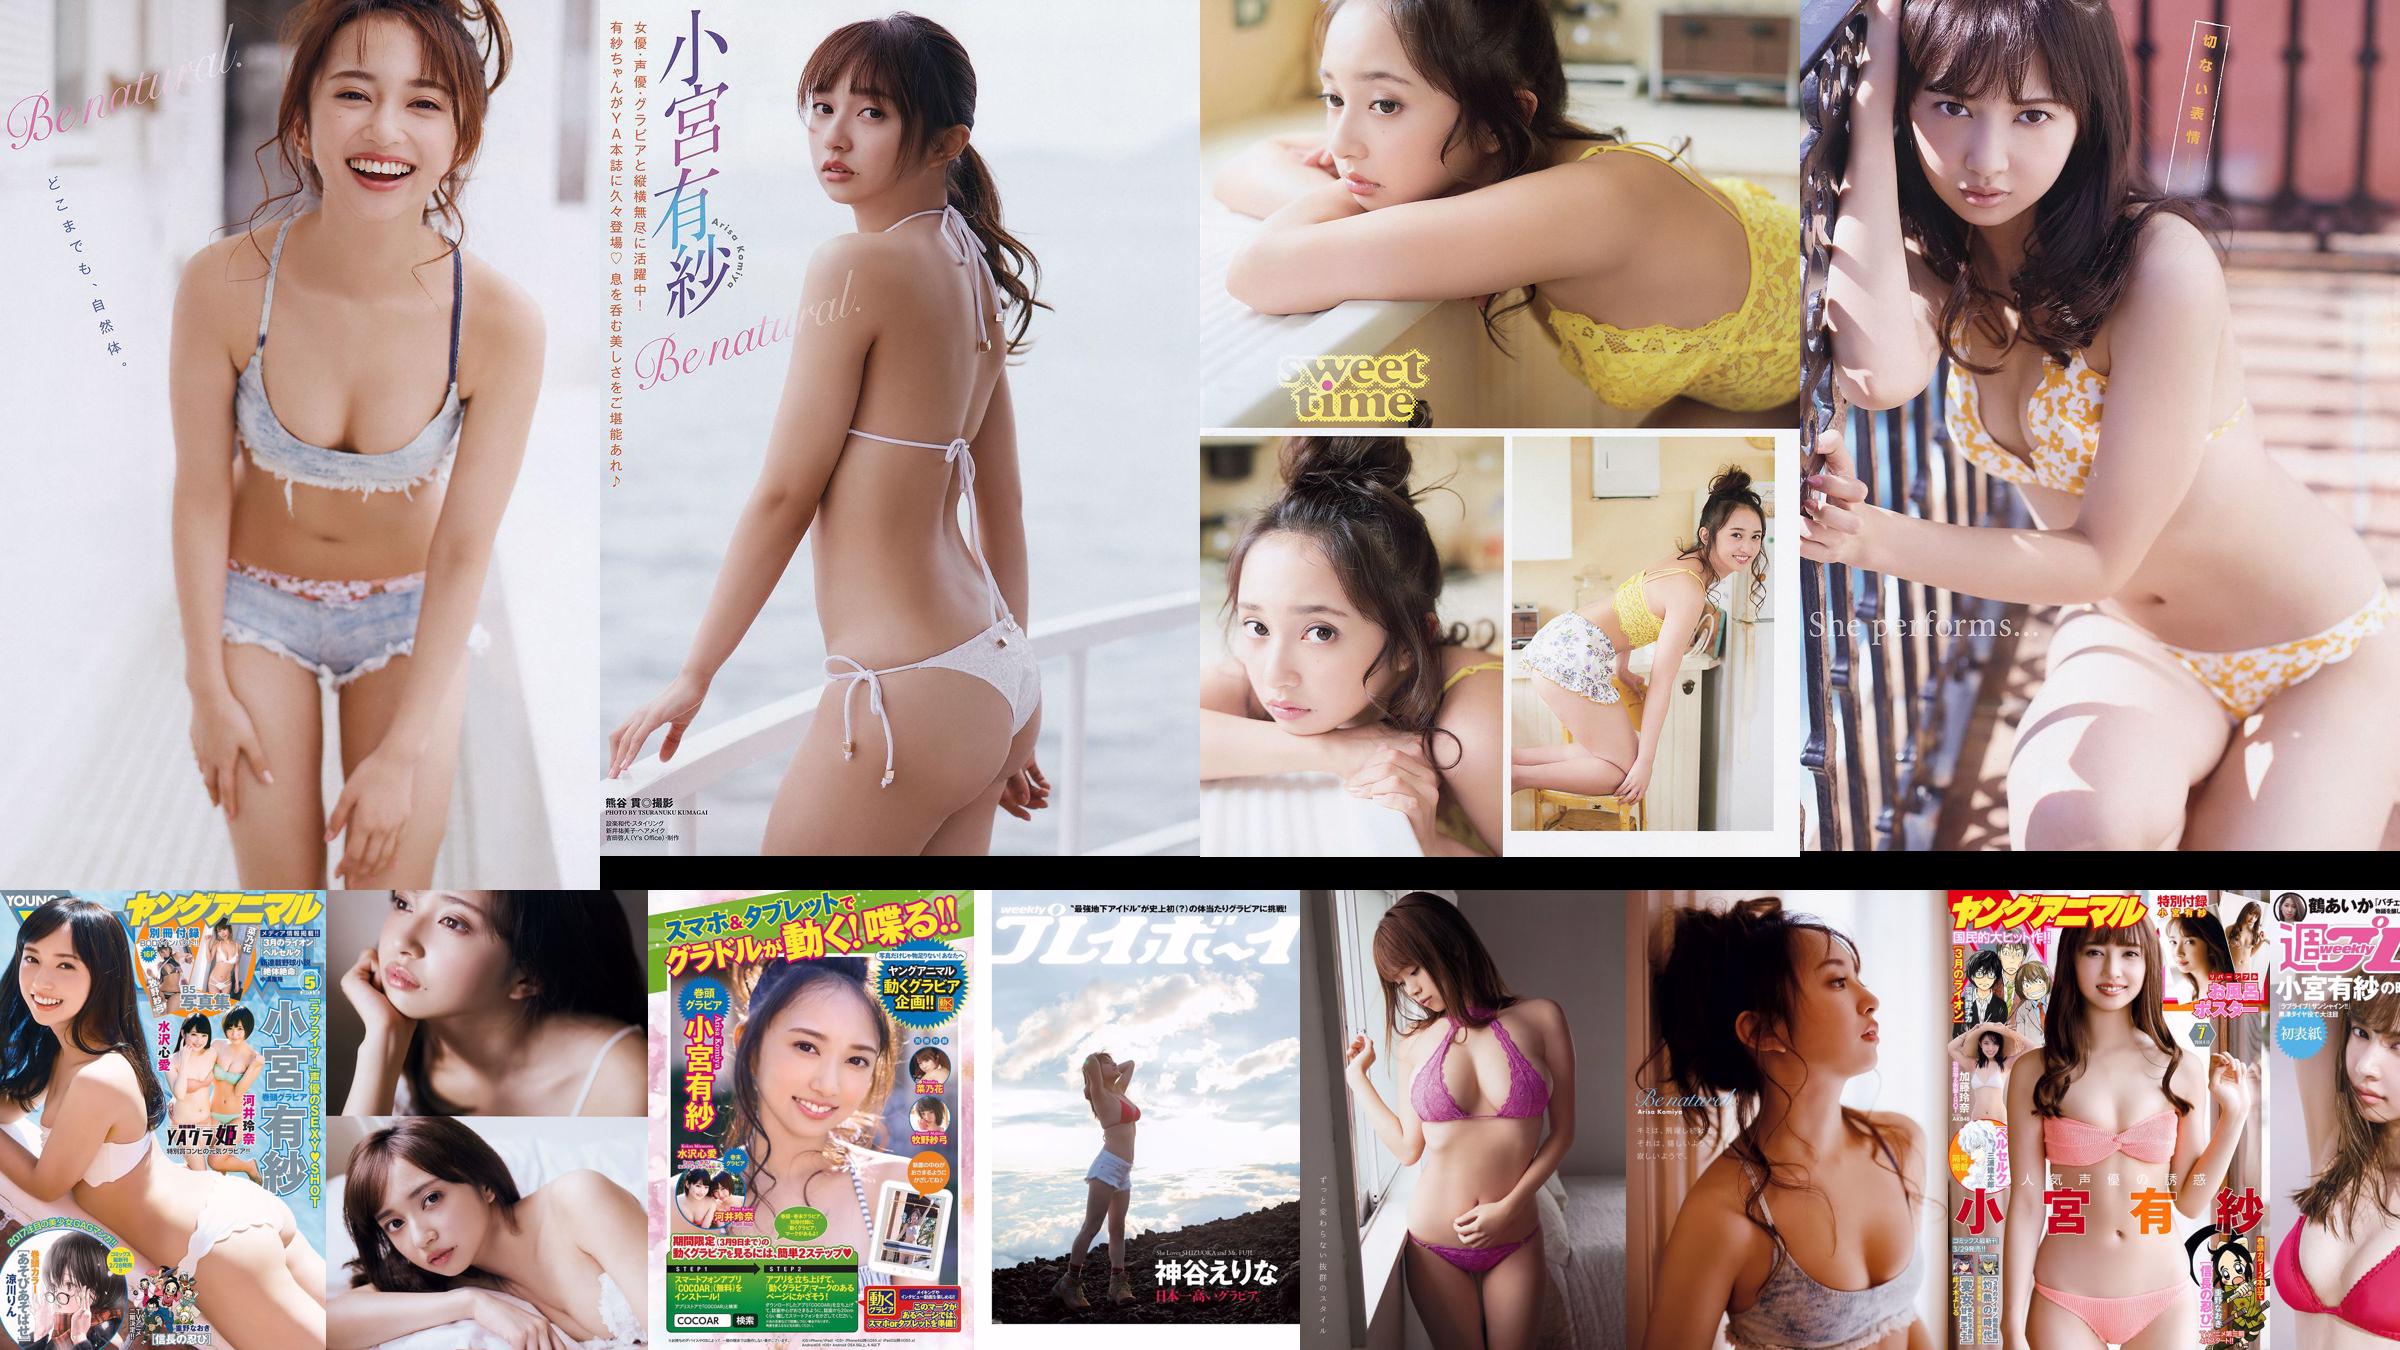 Arisa Komiya Rena Kato [Hewan Muda] 2018 Majalah Foto No. 07 No.b3b611 Halaman 2